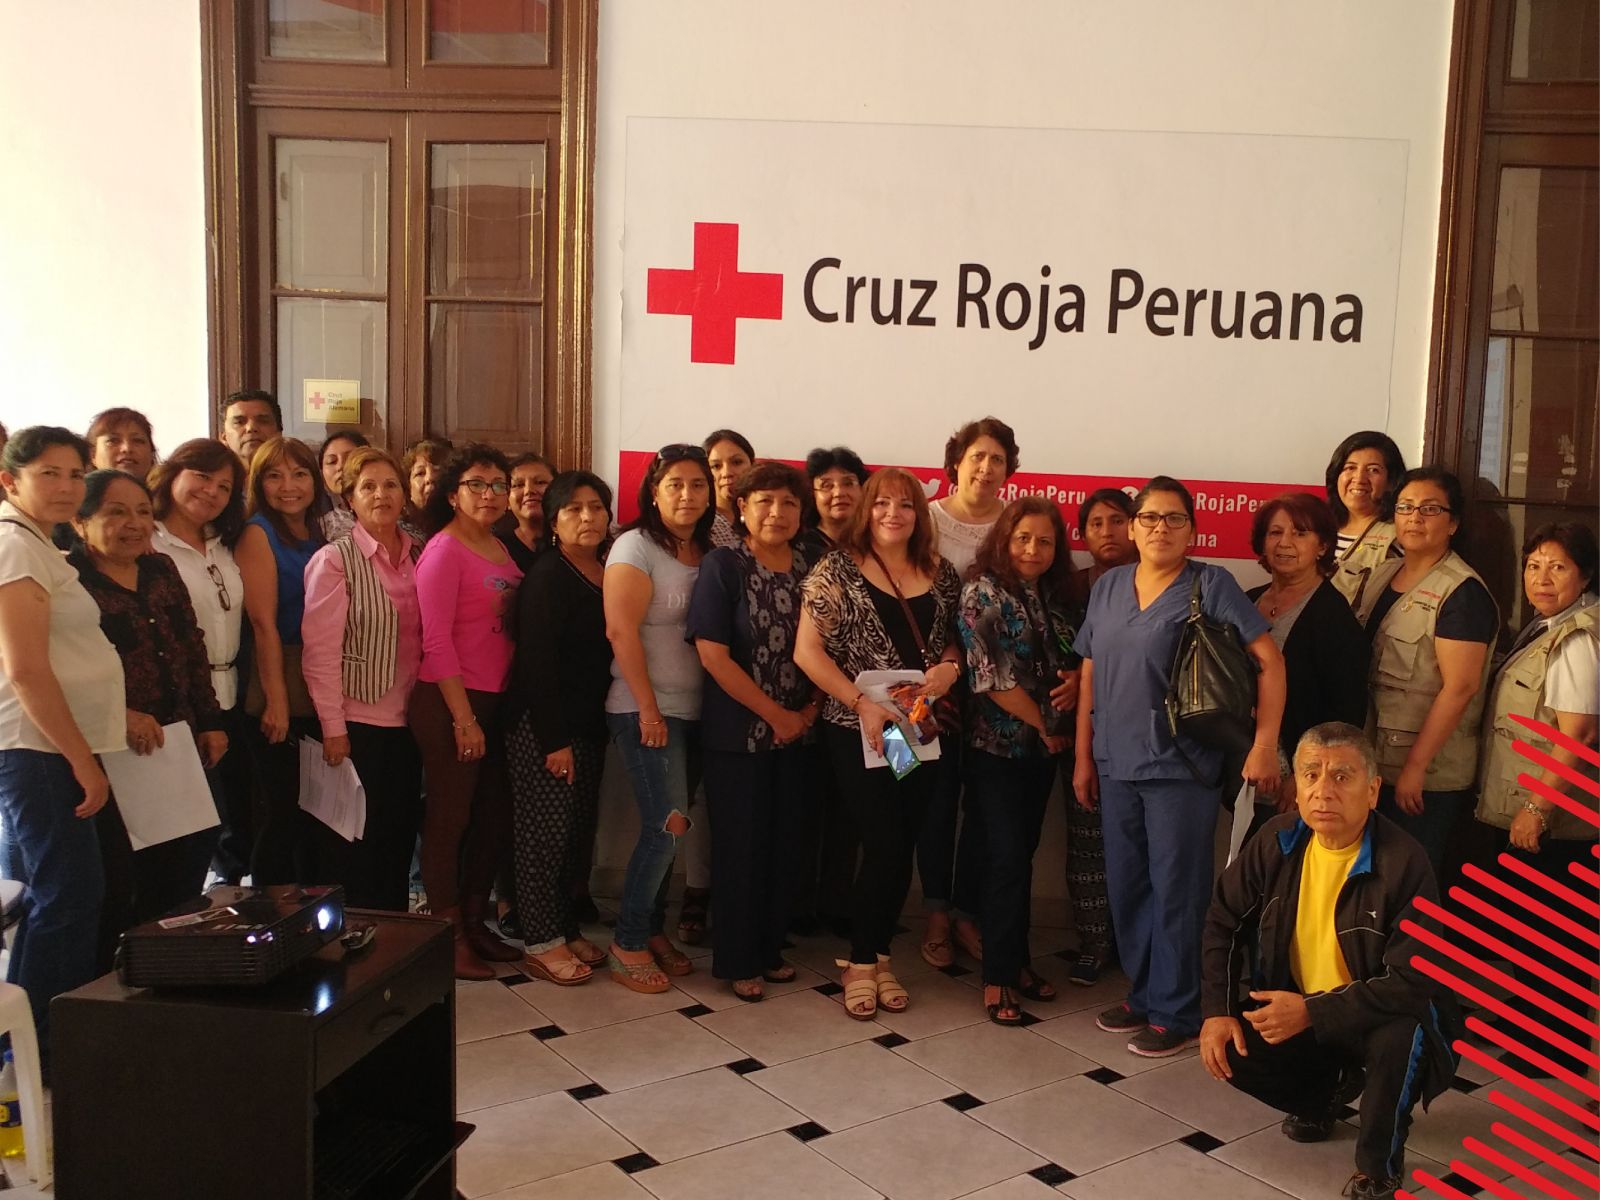 Taller en la Cruz Roja Peruana